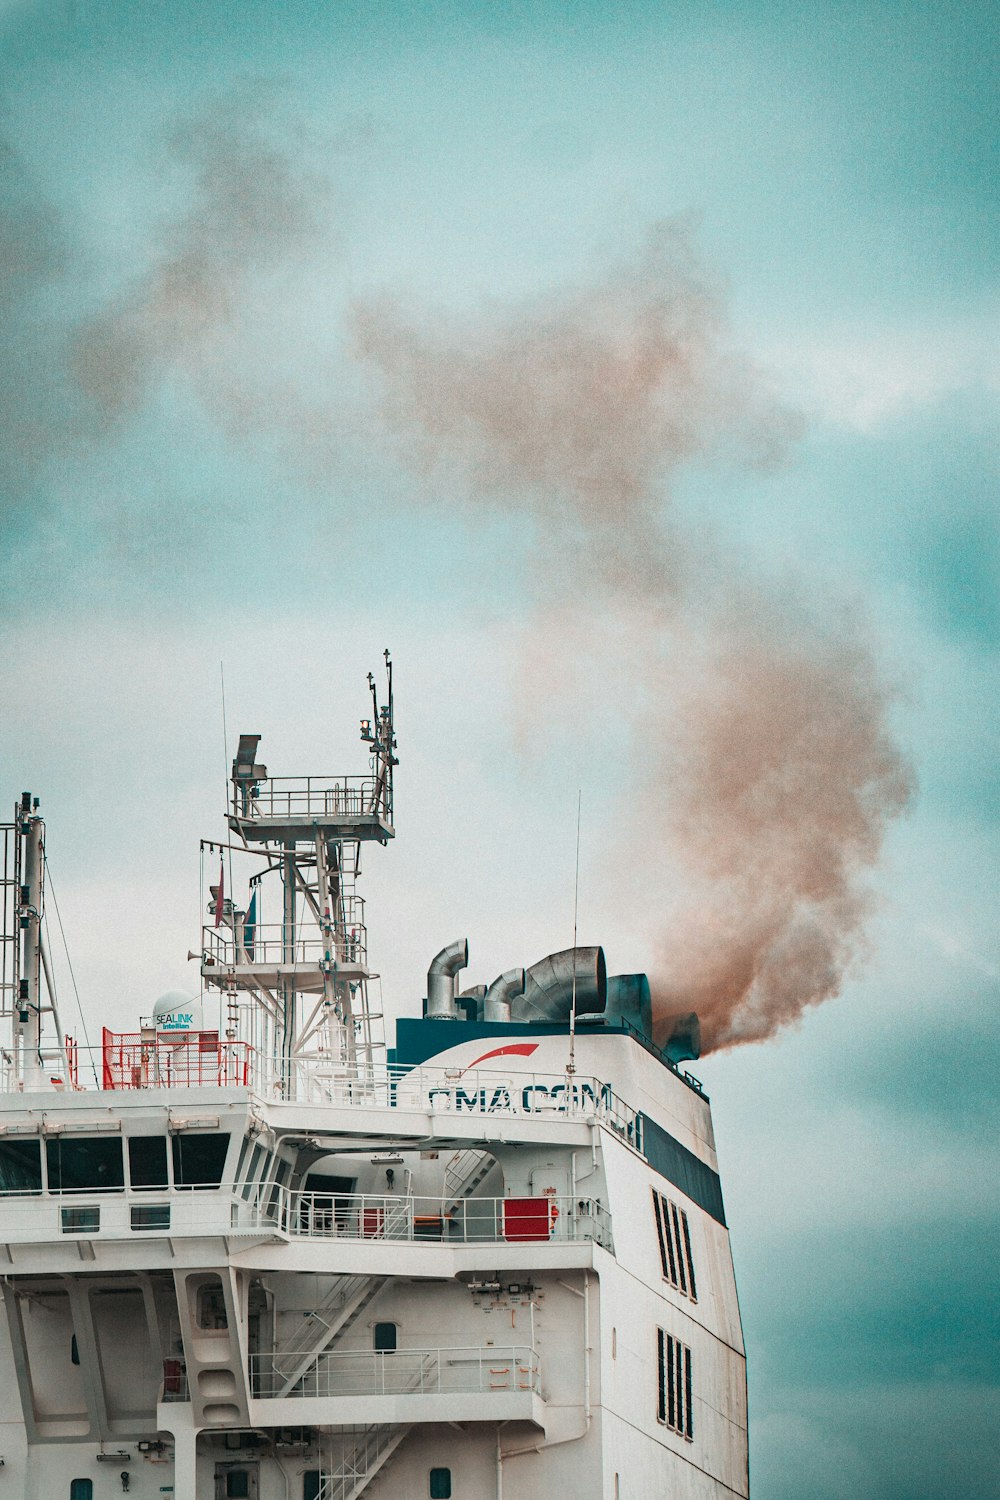 クルーズ船の上から煙が渦巻く